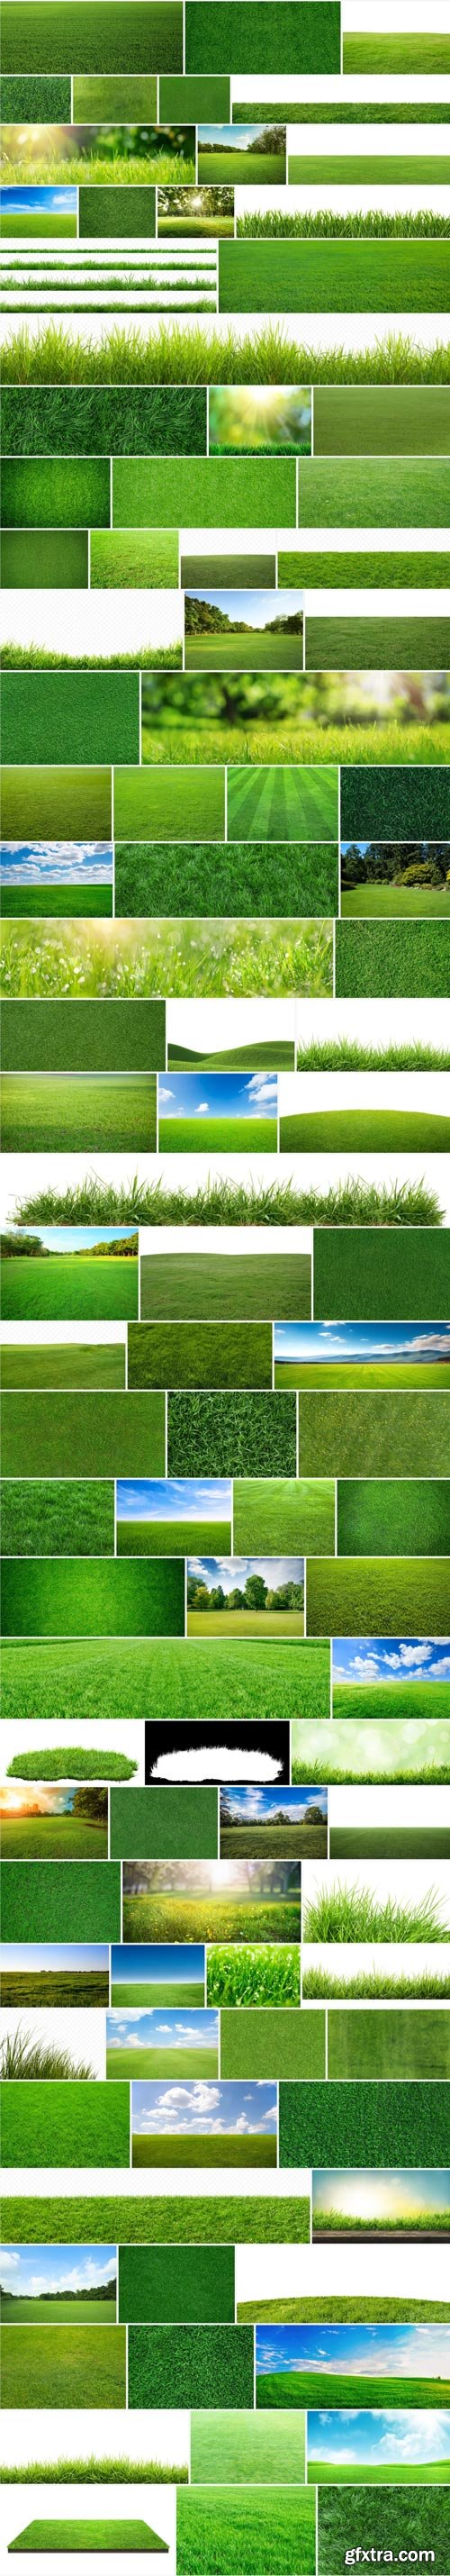 Amazing Photos, Green Grass 100xJPEG